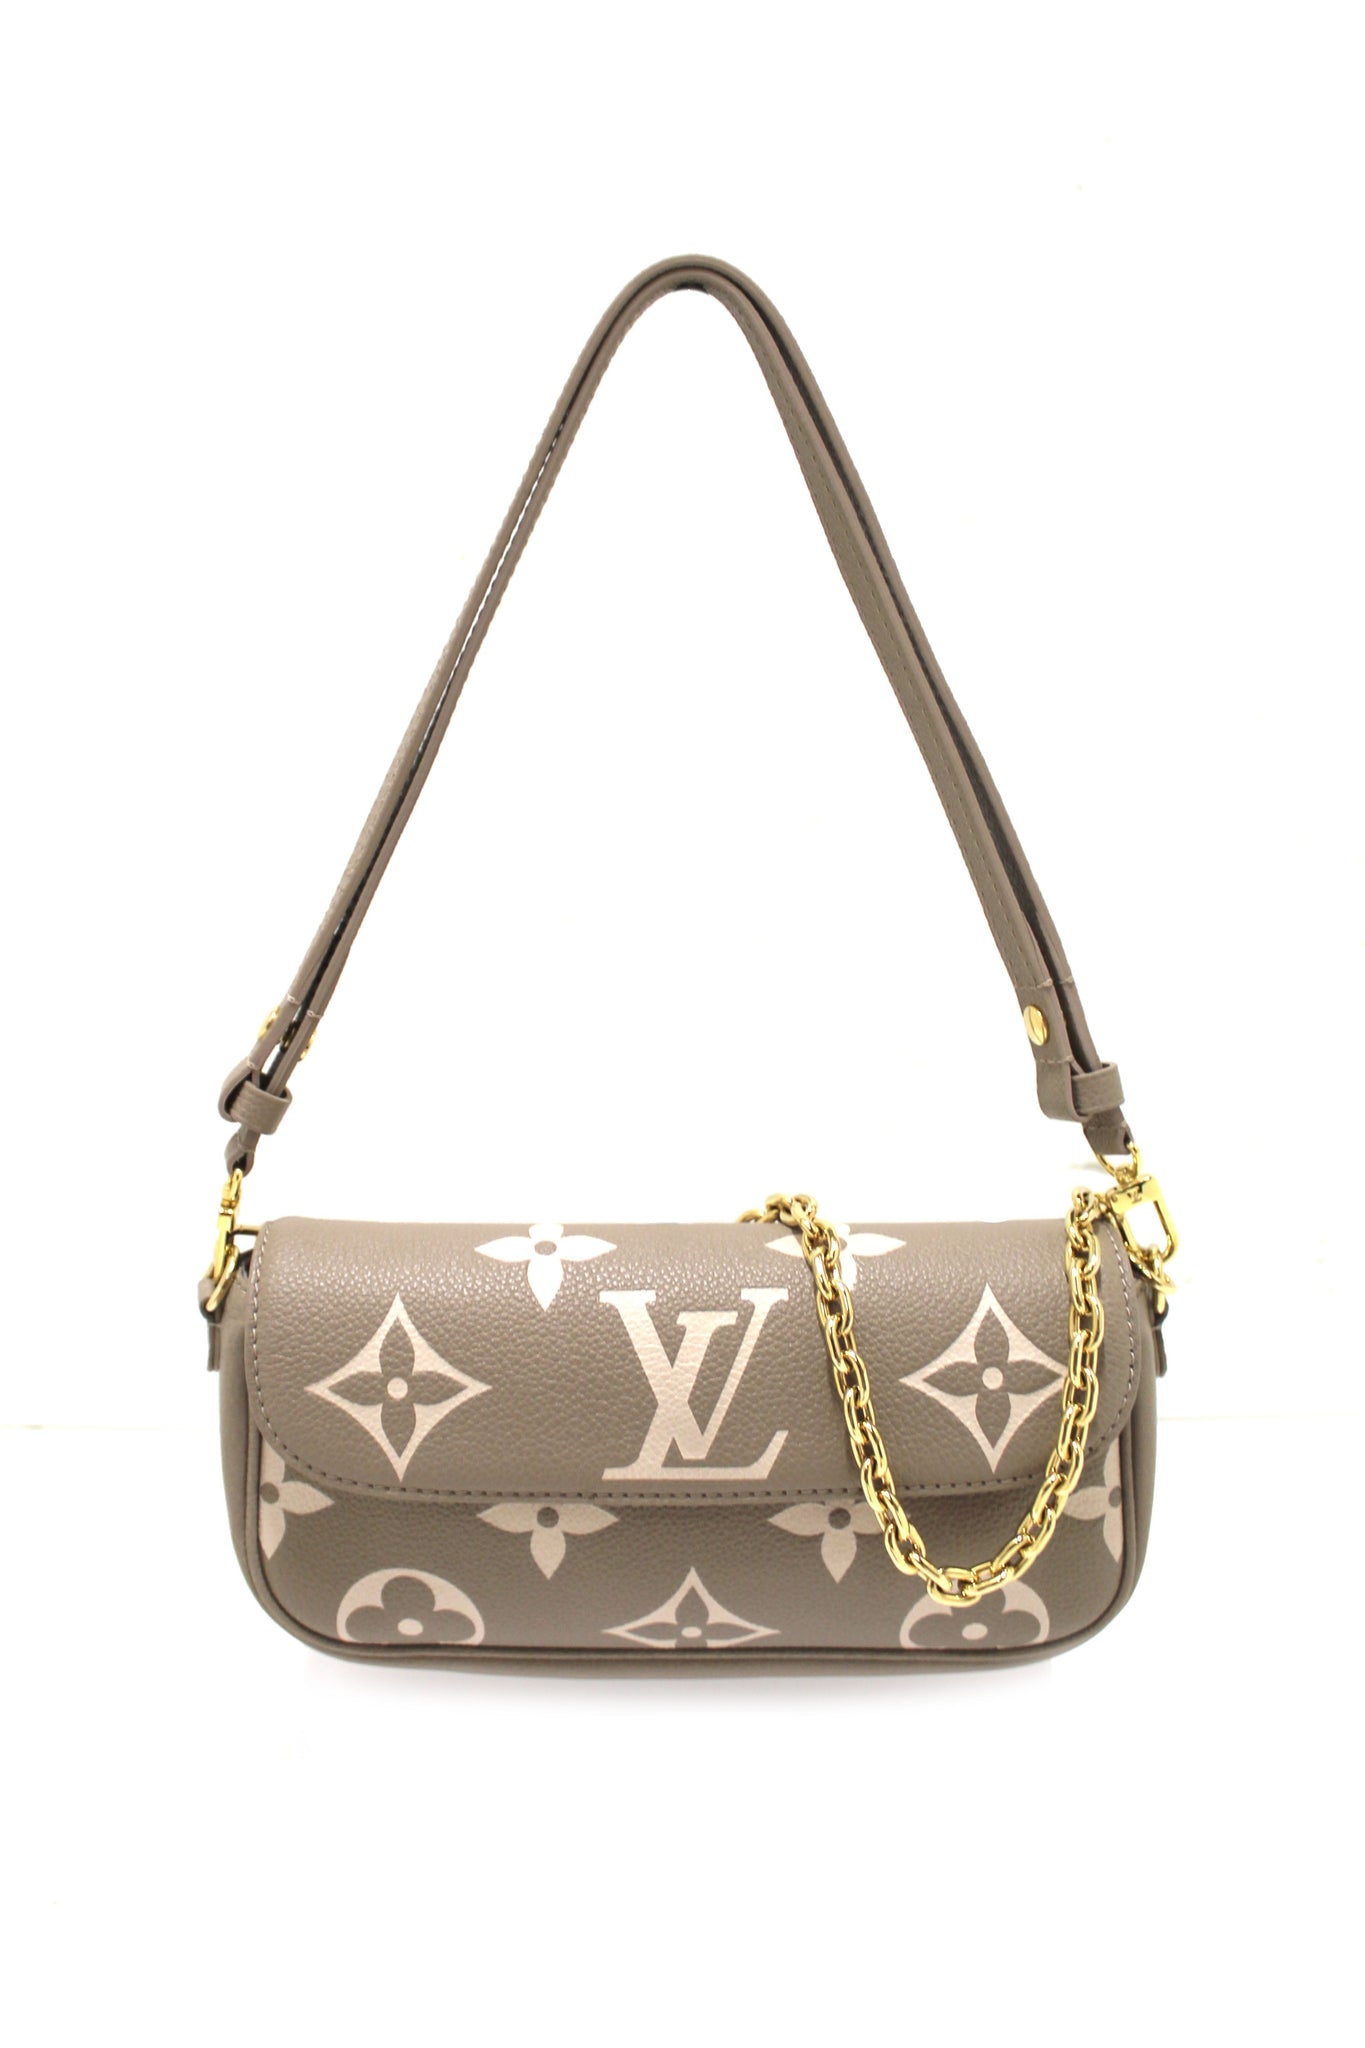 Louis Vuitton Wallet On Chain Ivy Cream in Monogram Empreinte